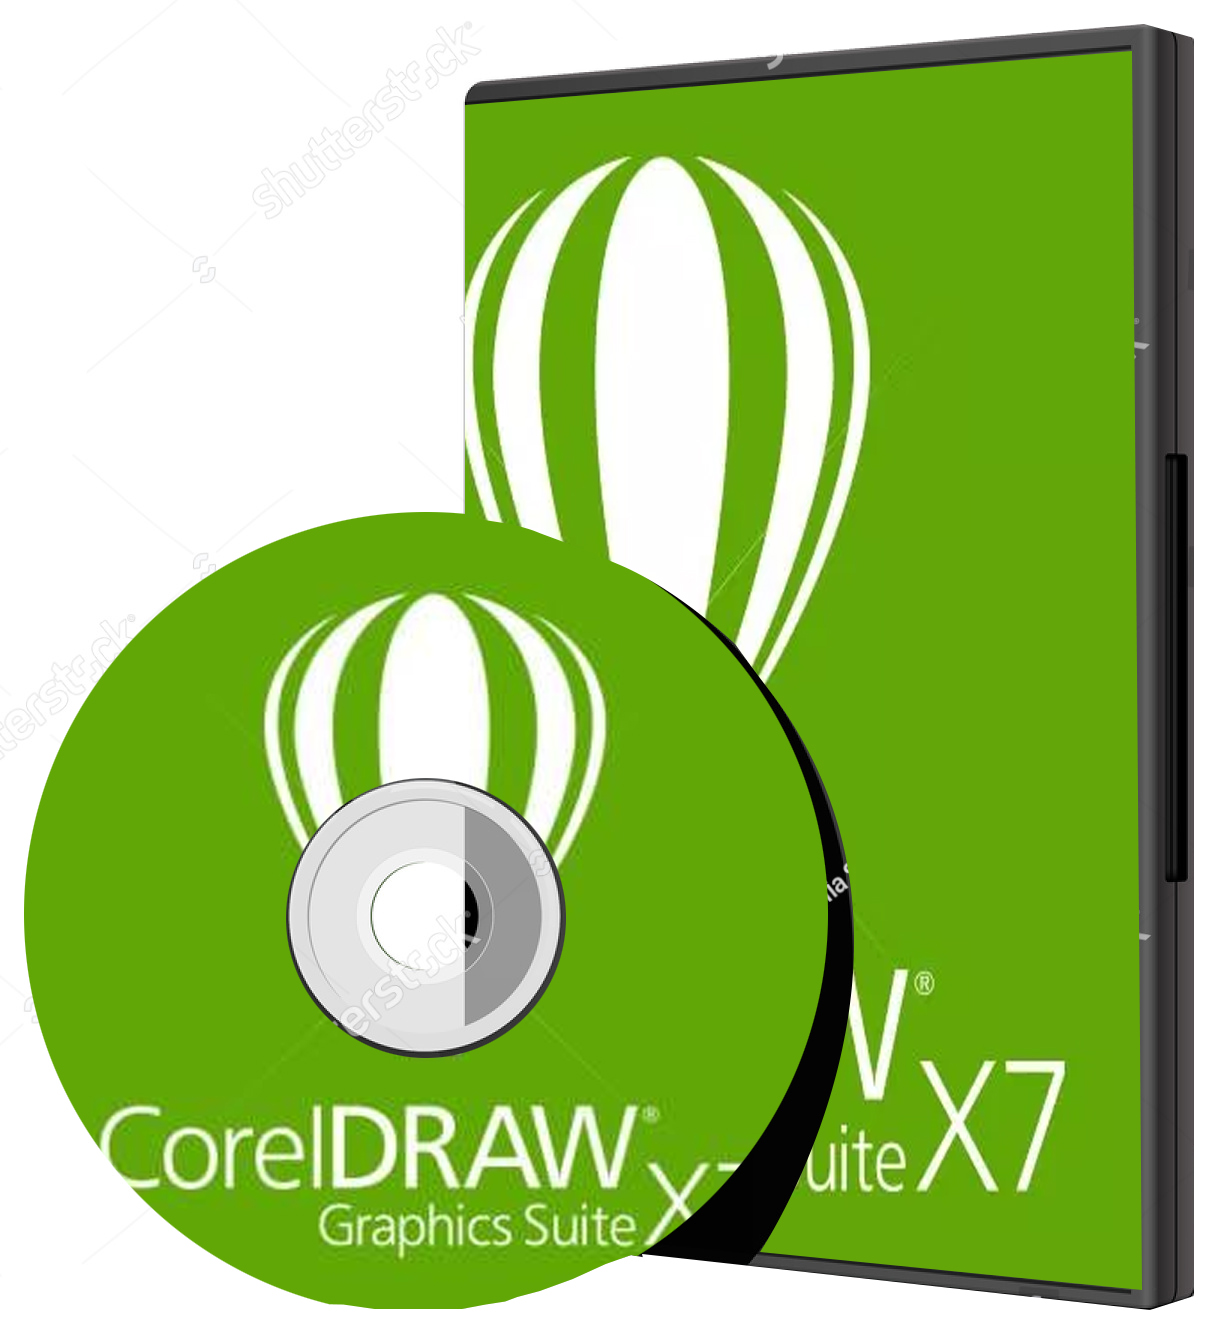 coreldraw x7 download free 32 bit